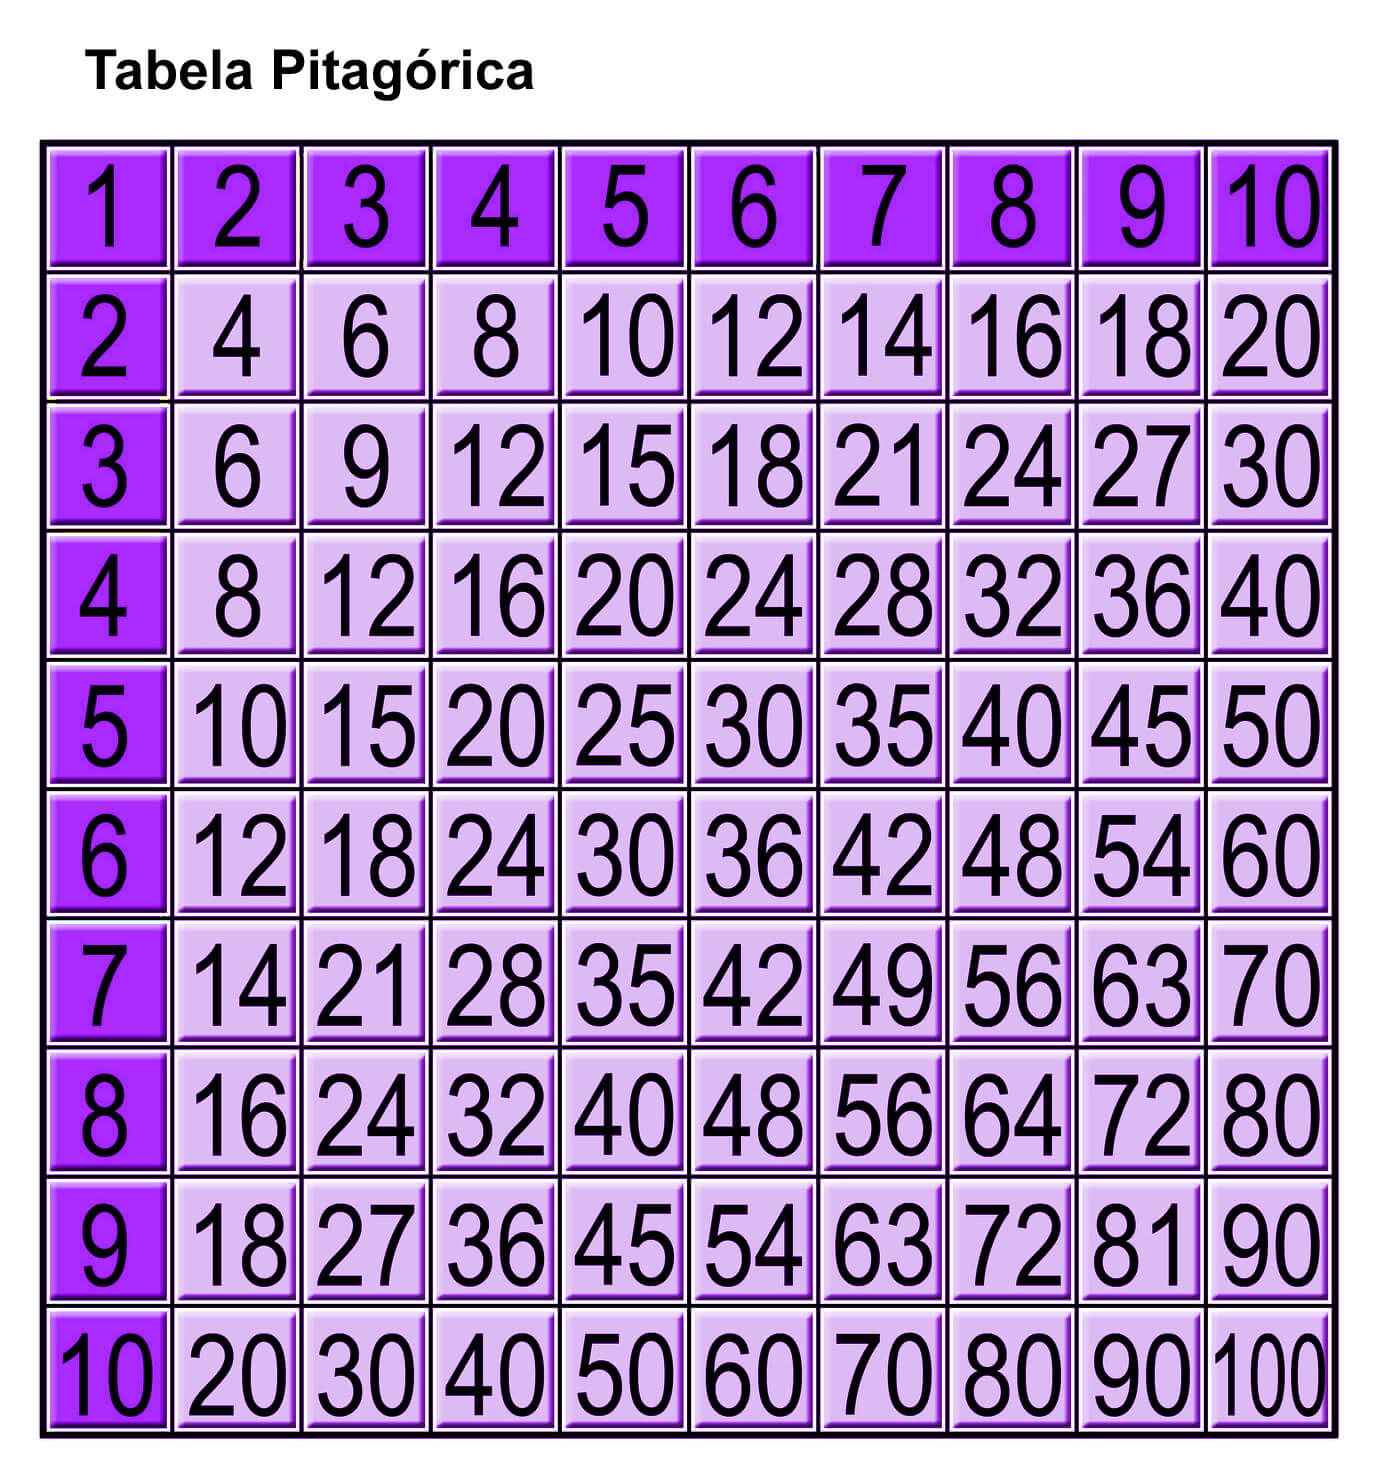 Como fazer multiplicação: As tábuas de multiplicar e as tabuadas